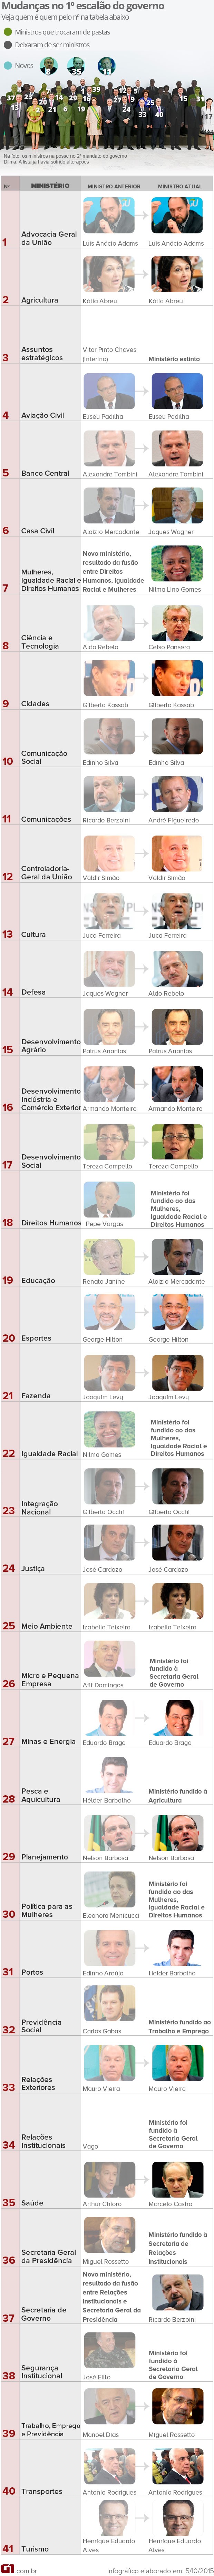 Reforma ministerial de Dilma - novos ministros do 2º mandato (arte completa) (Foto: Arte/G1)